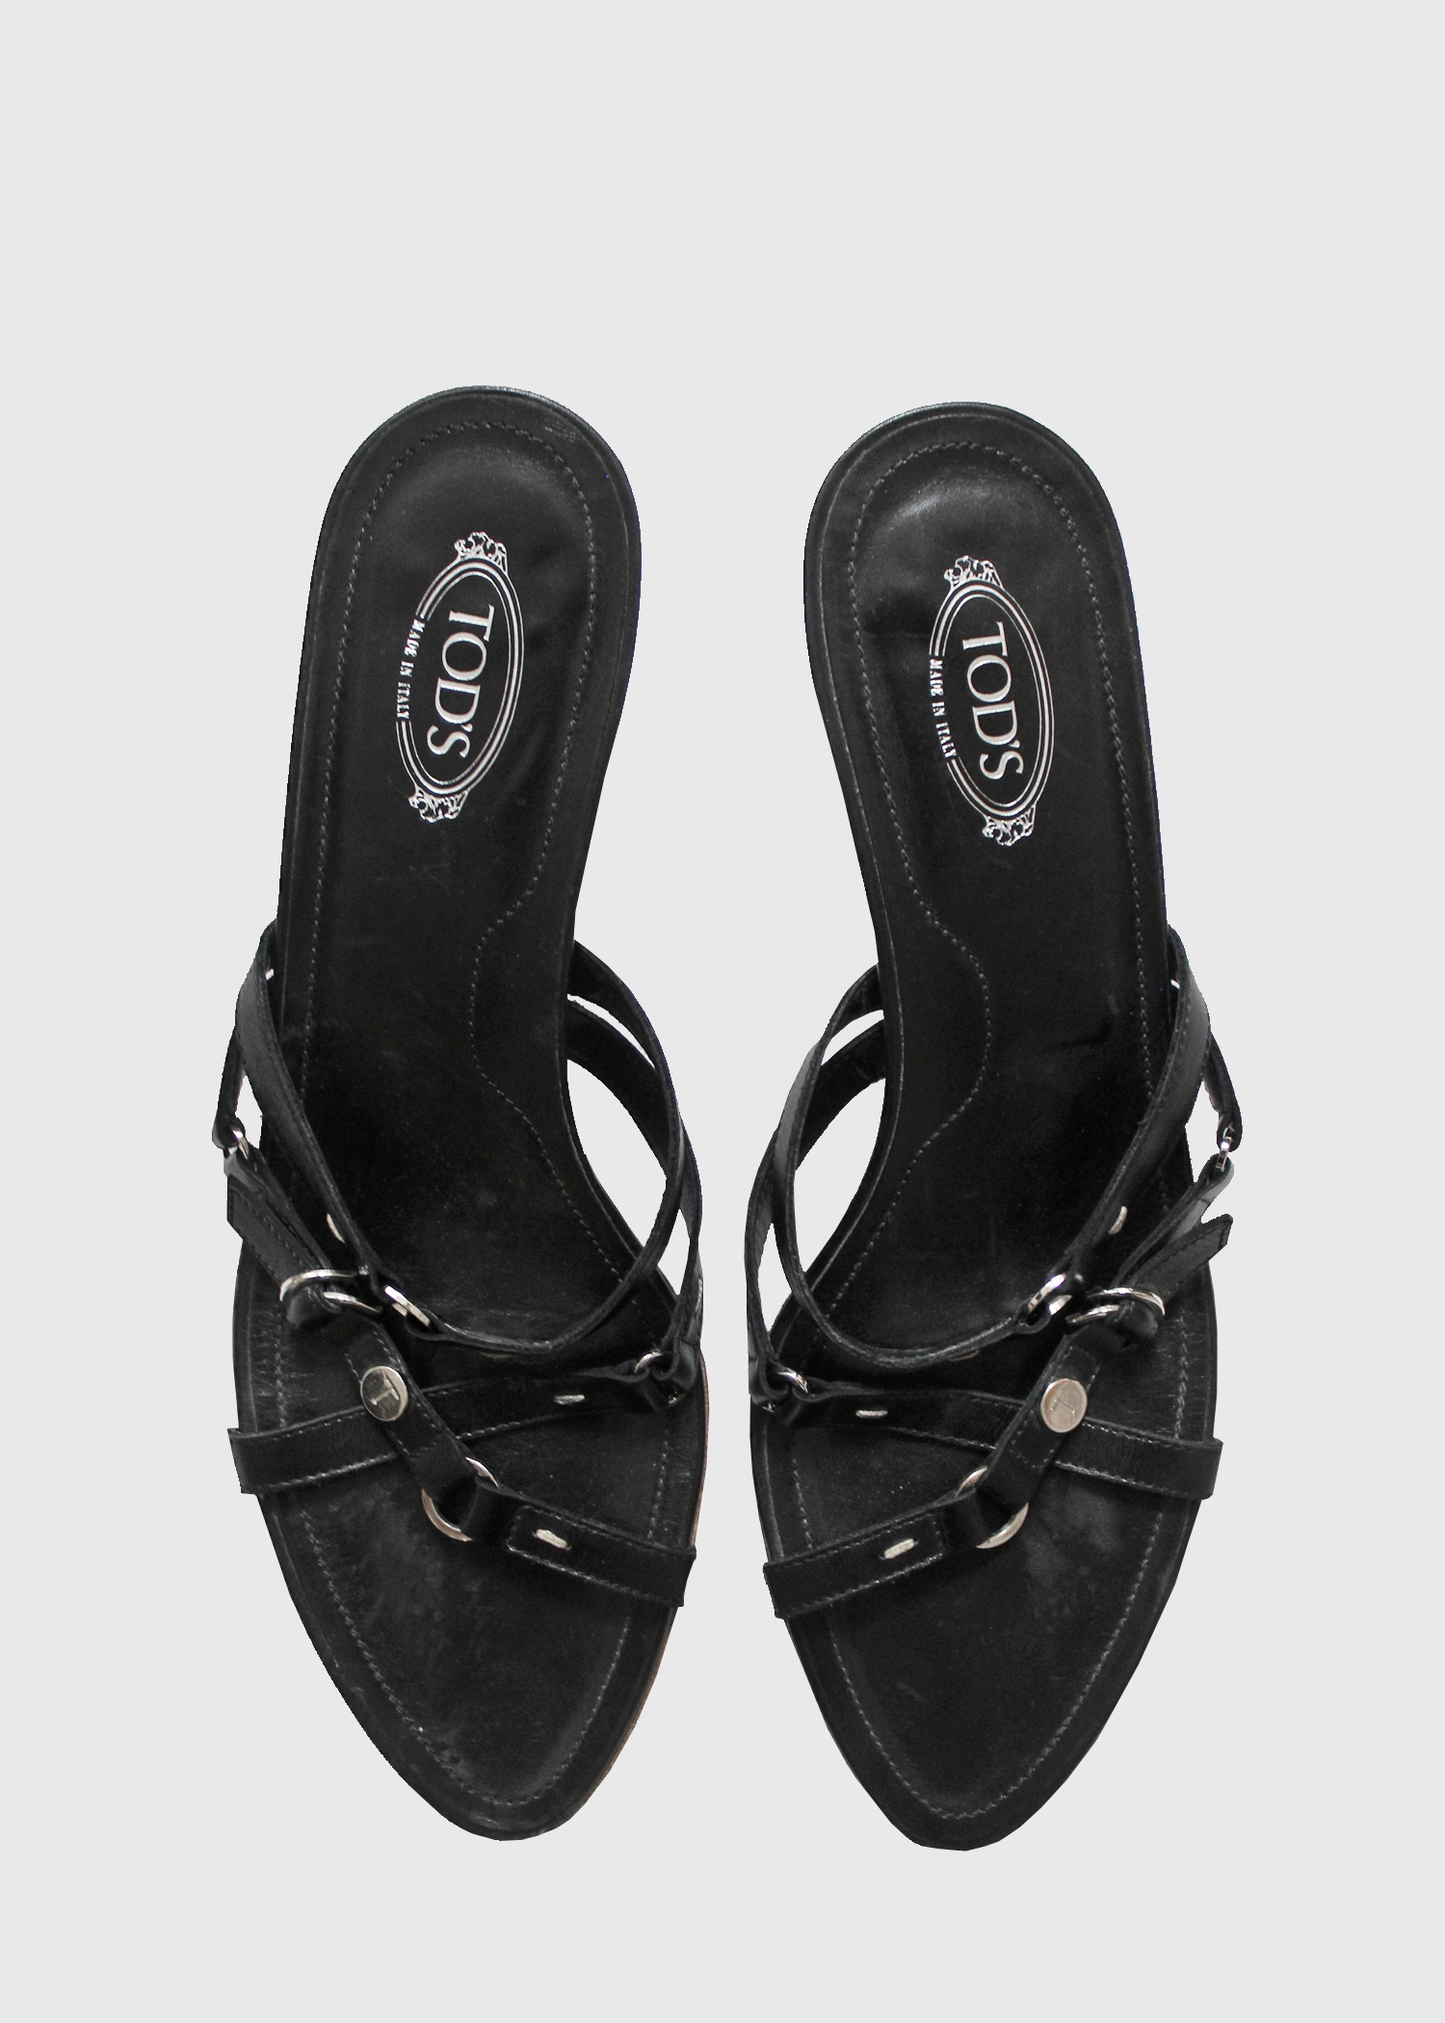 Tod's 2000s Harness Kitten Heel in Black- Size 9.5